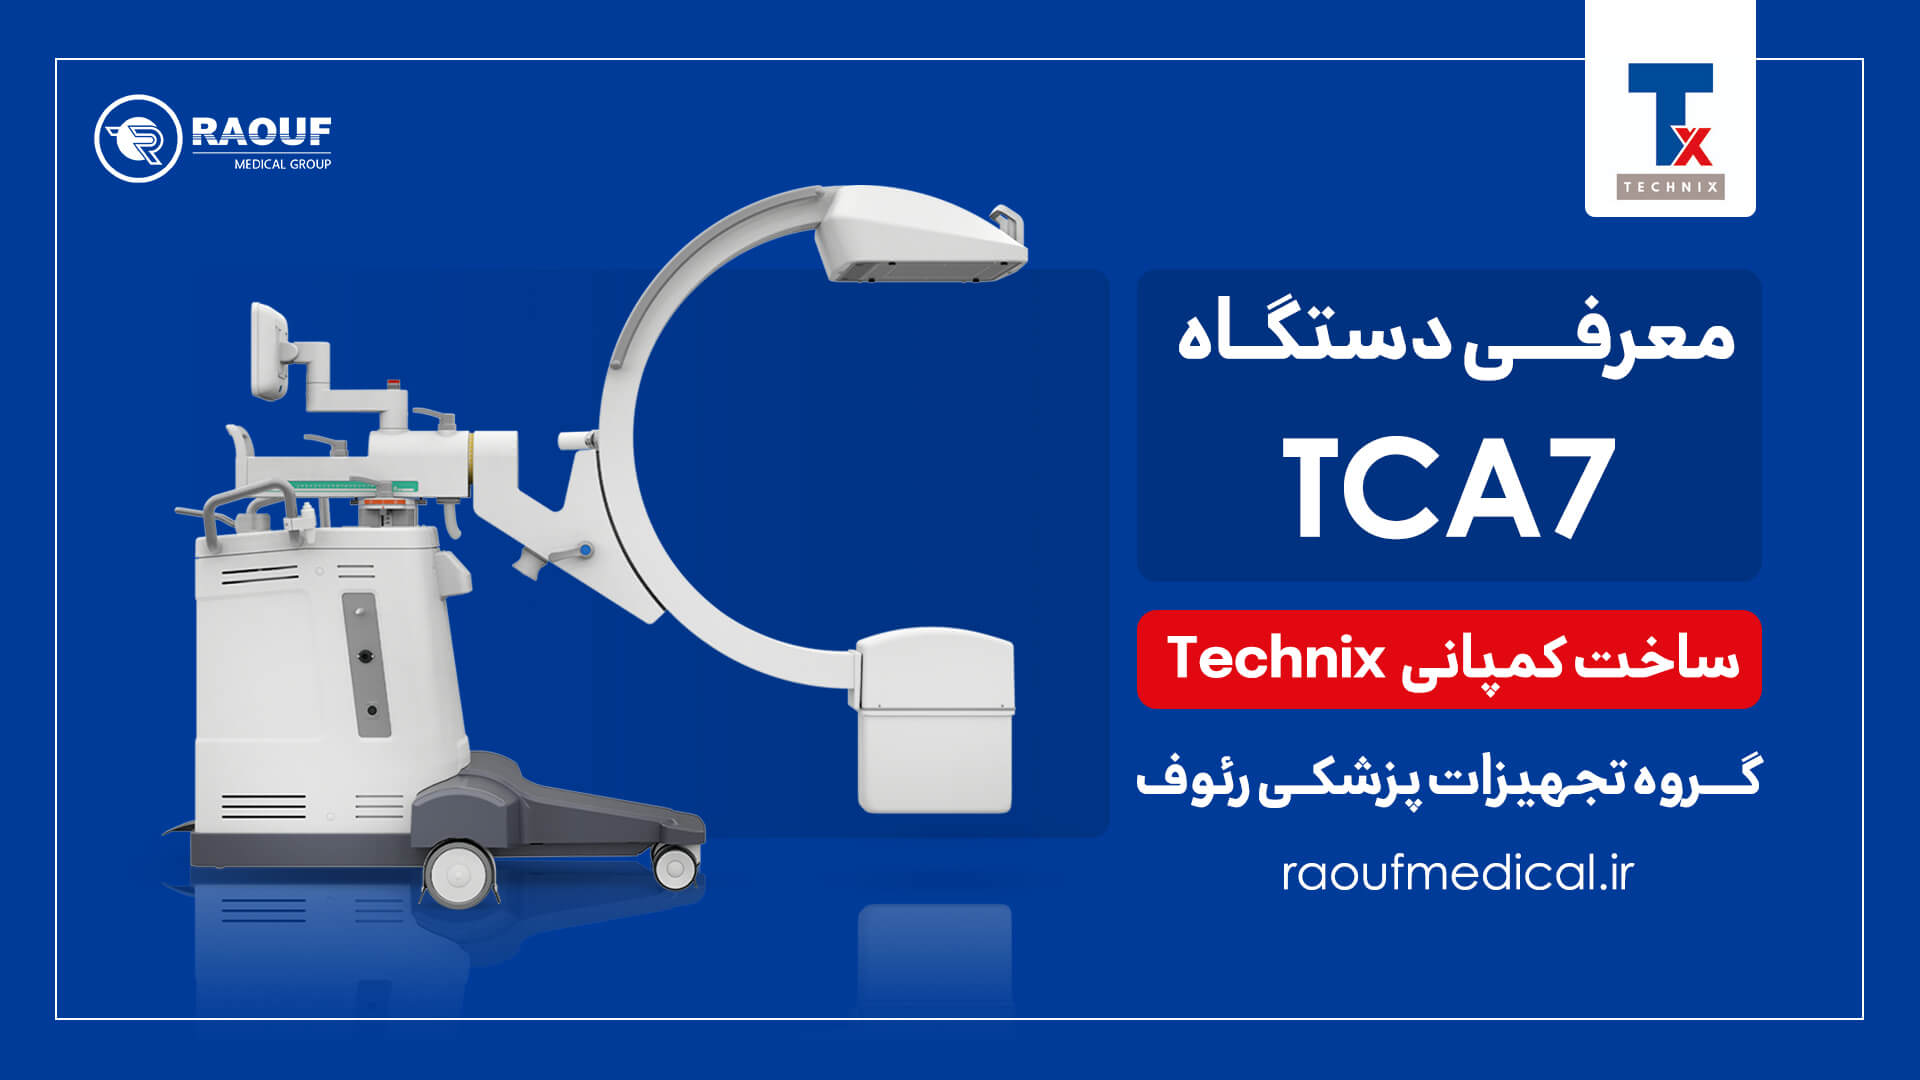 معرفی دستگاه TCA7 ساخت کمپانی Technix